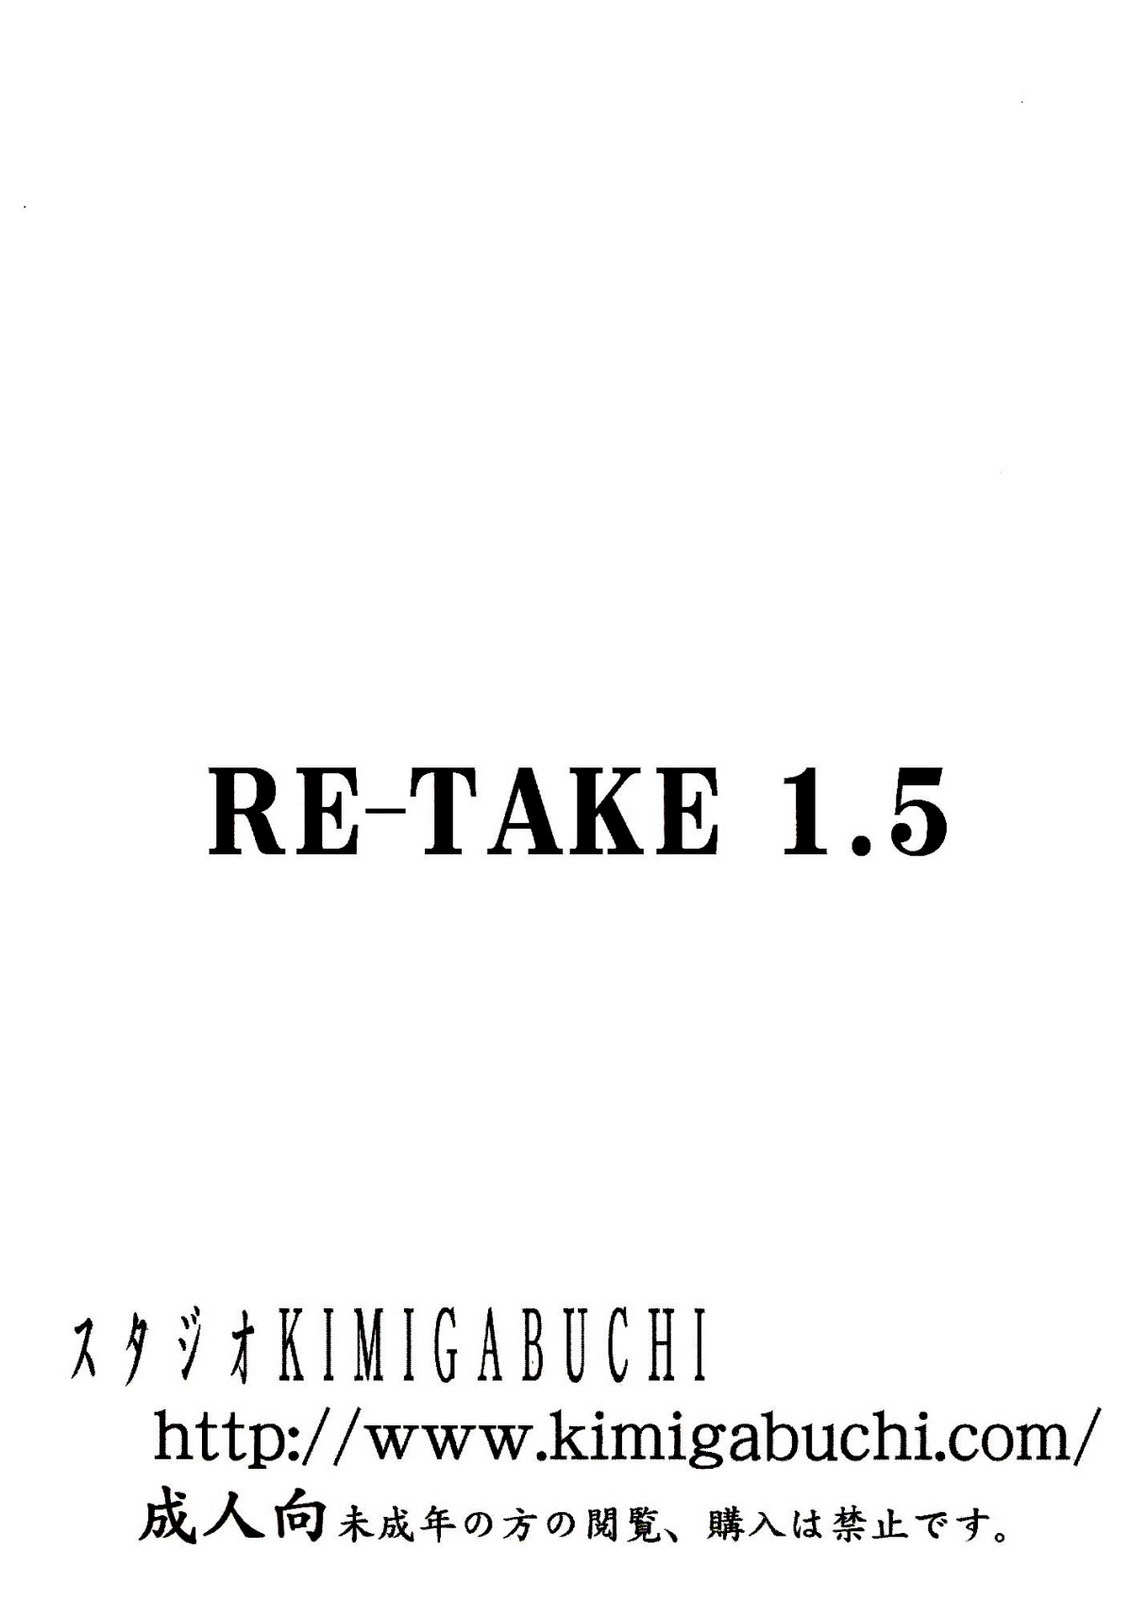 RE-TAKE 1.5 numero d'image 33